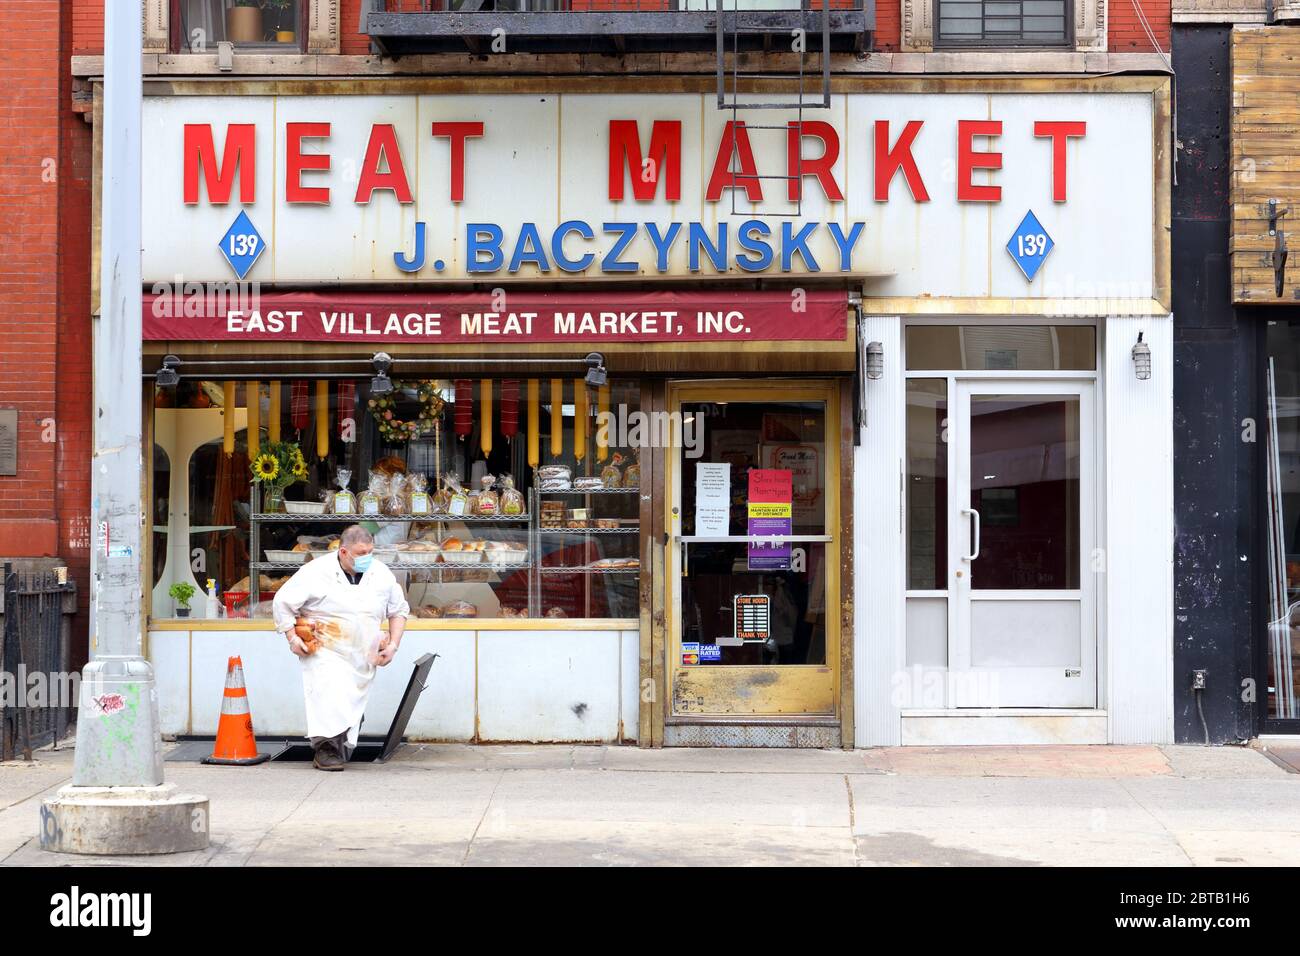 East Village Meat Market, 139 Second Avenue, New York, NYC Foto von einer osteuropäischen Metzgerei in Manhattans East Village. Stockfoto